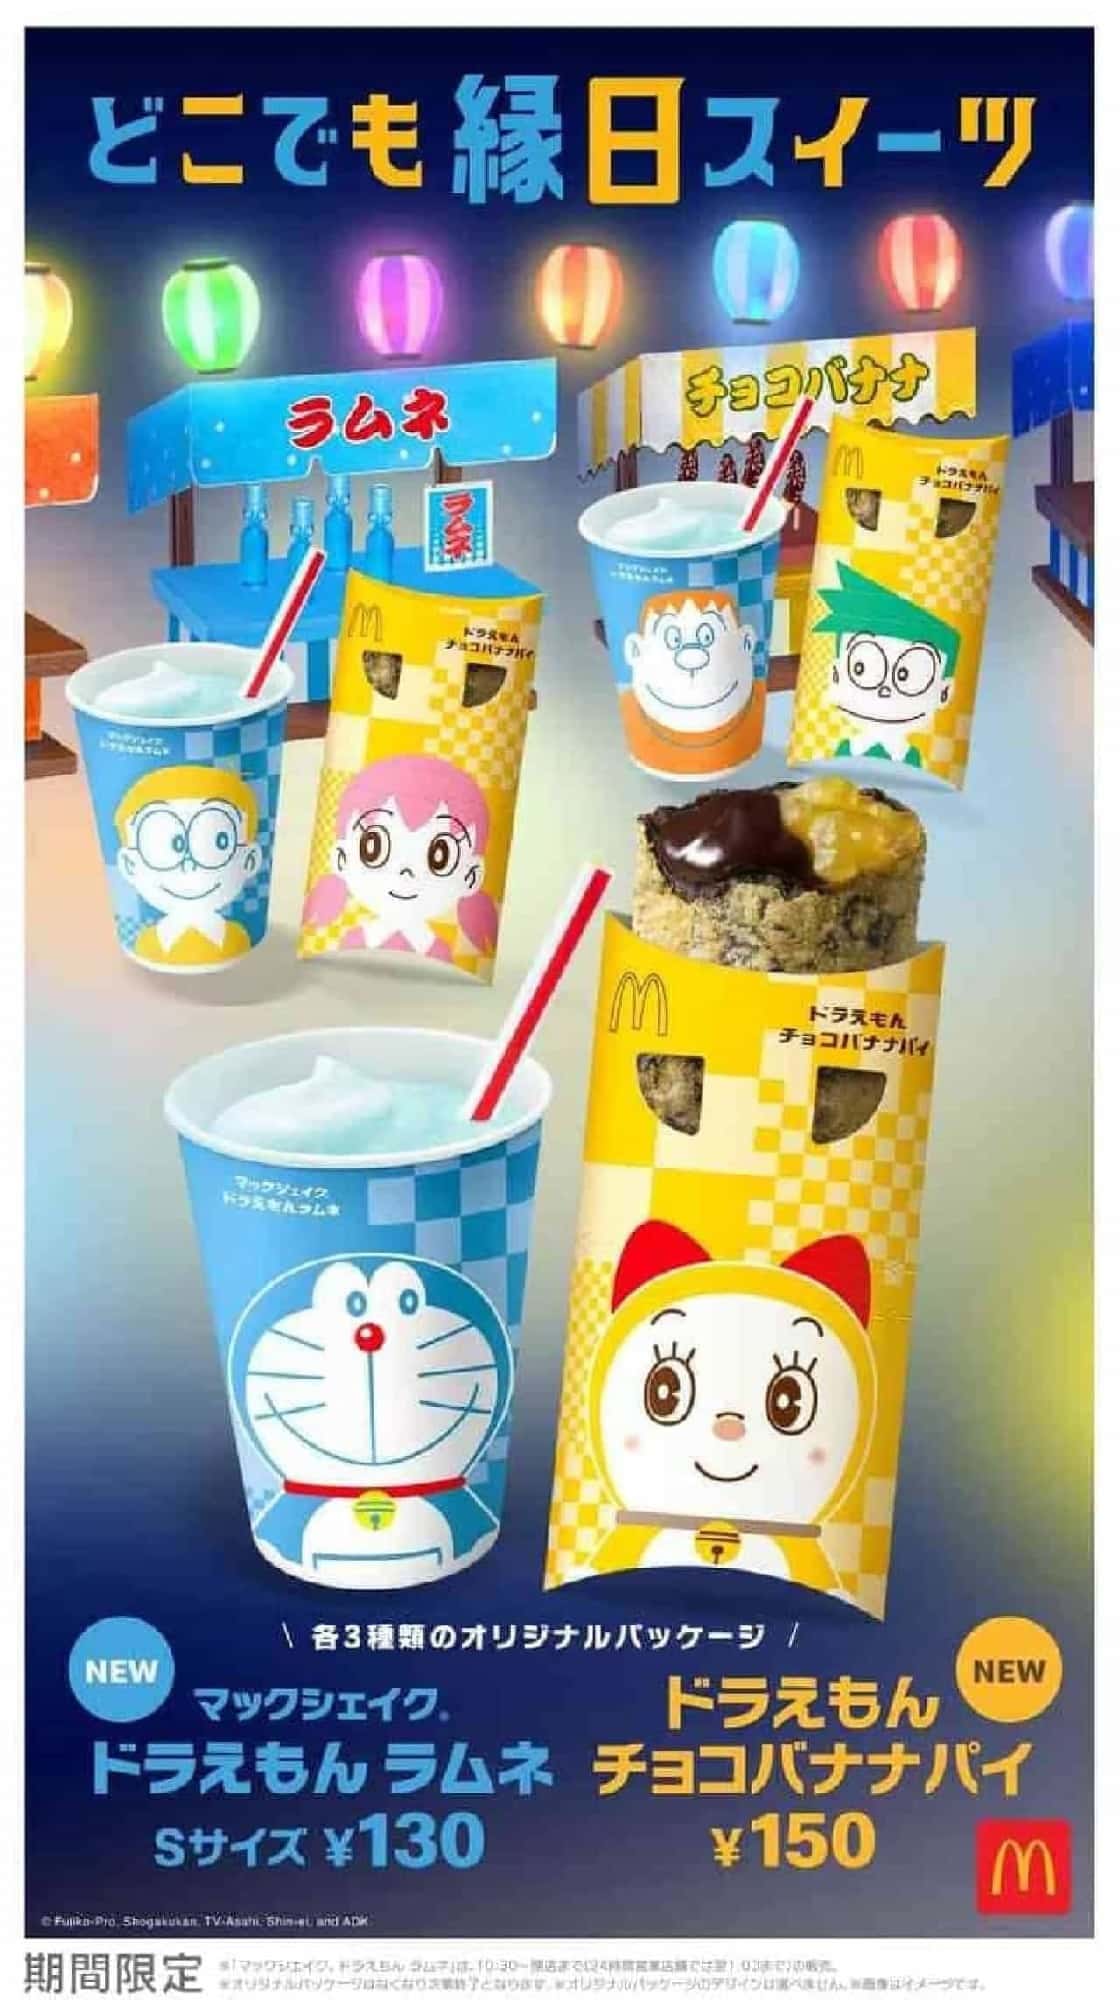 McDonald's "McShake Doraemon Ramune" and "Doraemon Chocolate Banana Pie